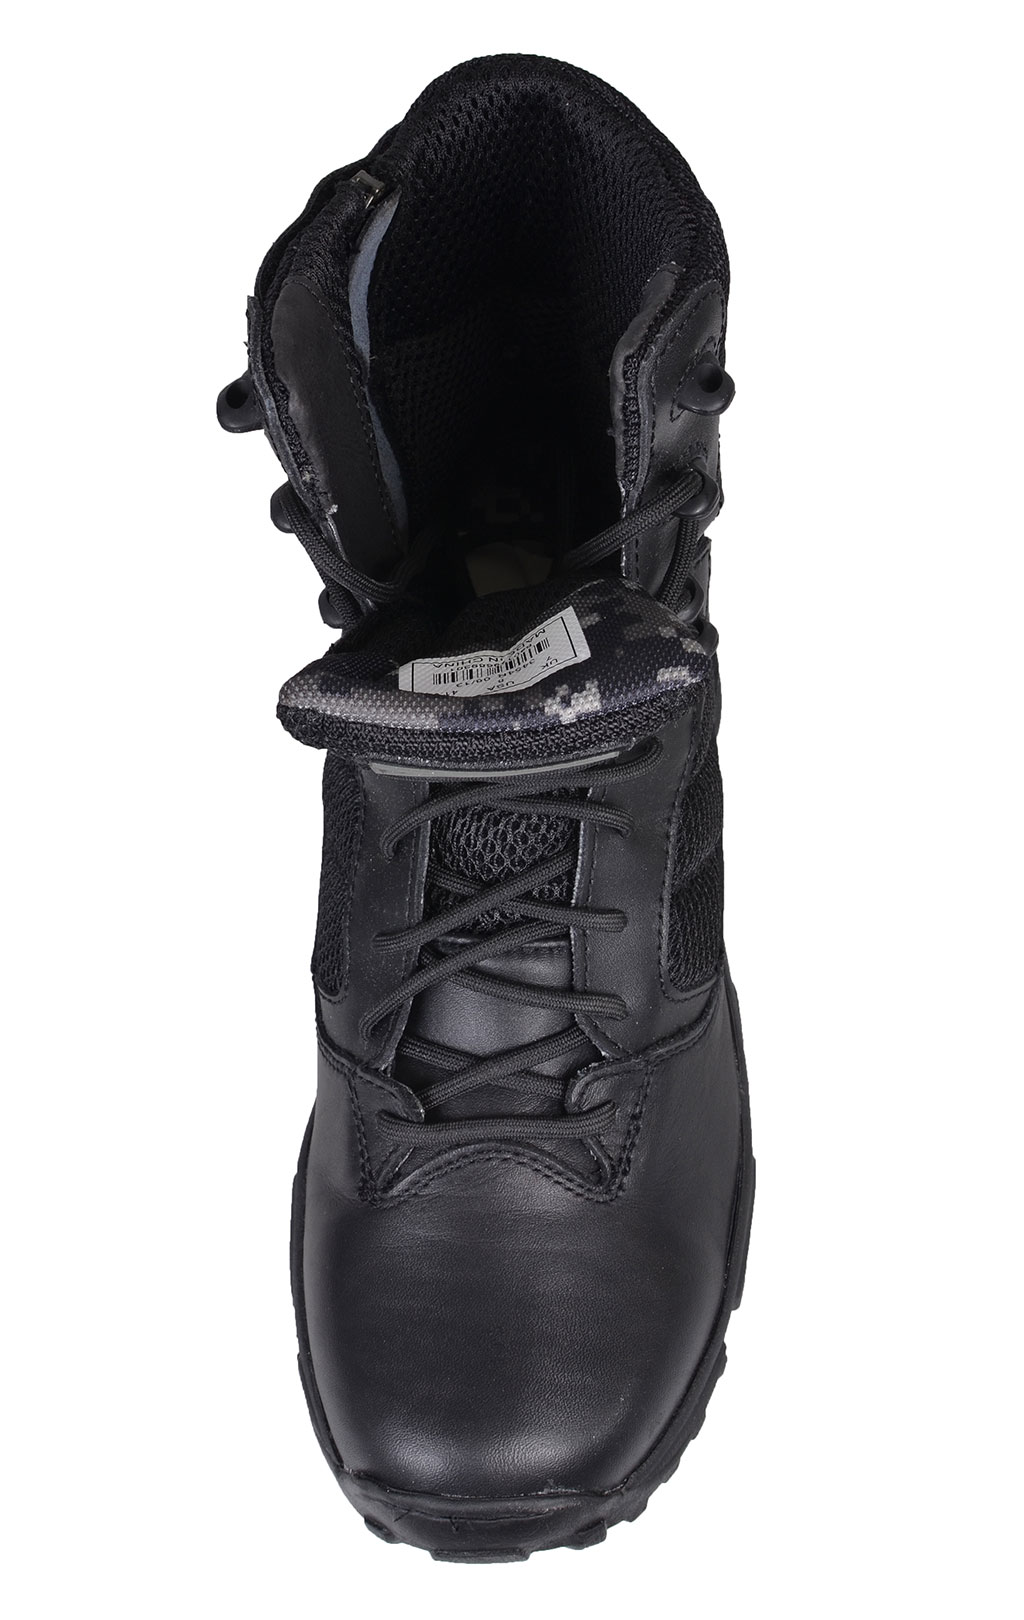 Ботинки- тактические ALTAMA LITE 8 side-zip black 3454 